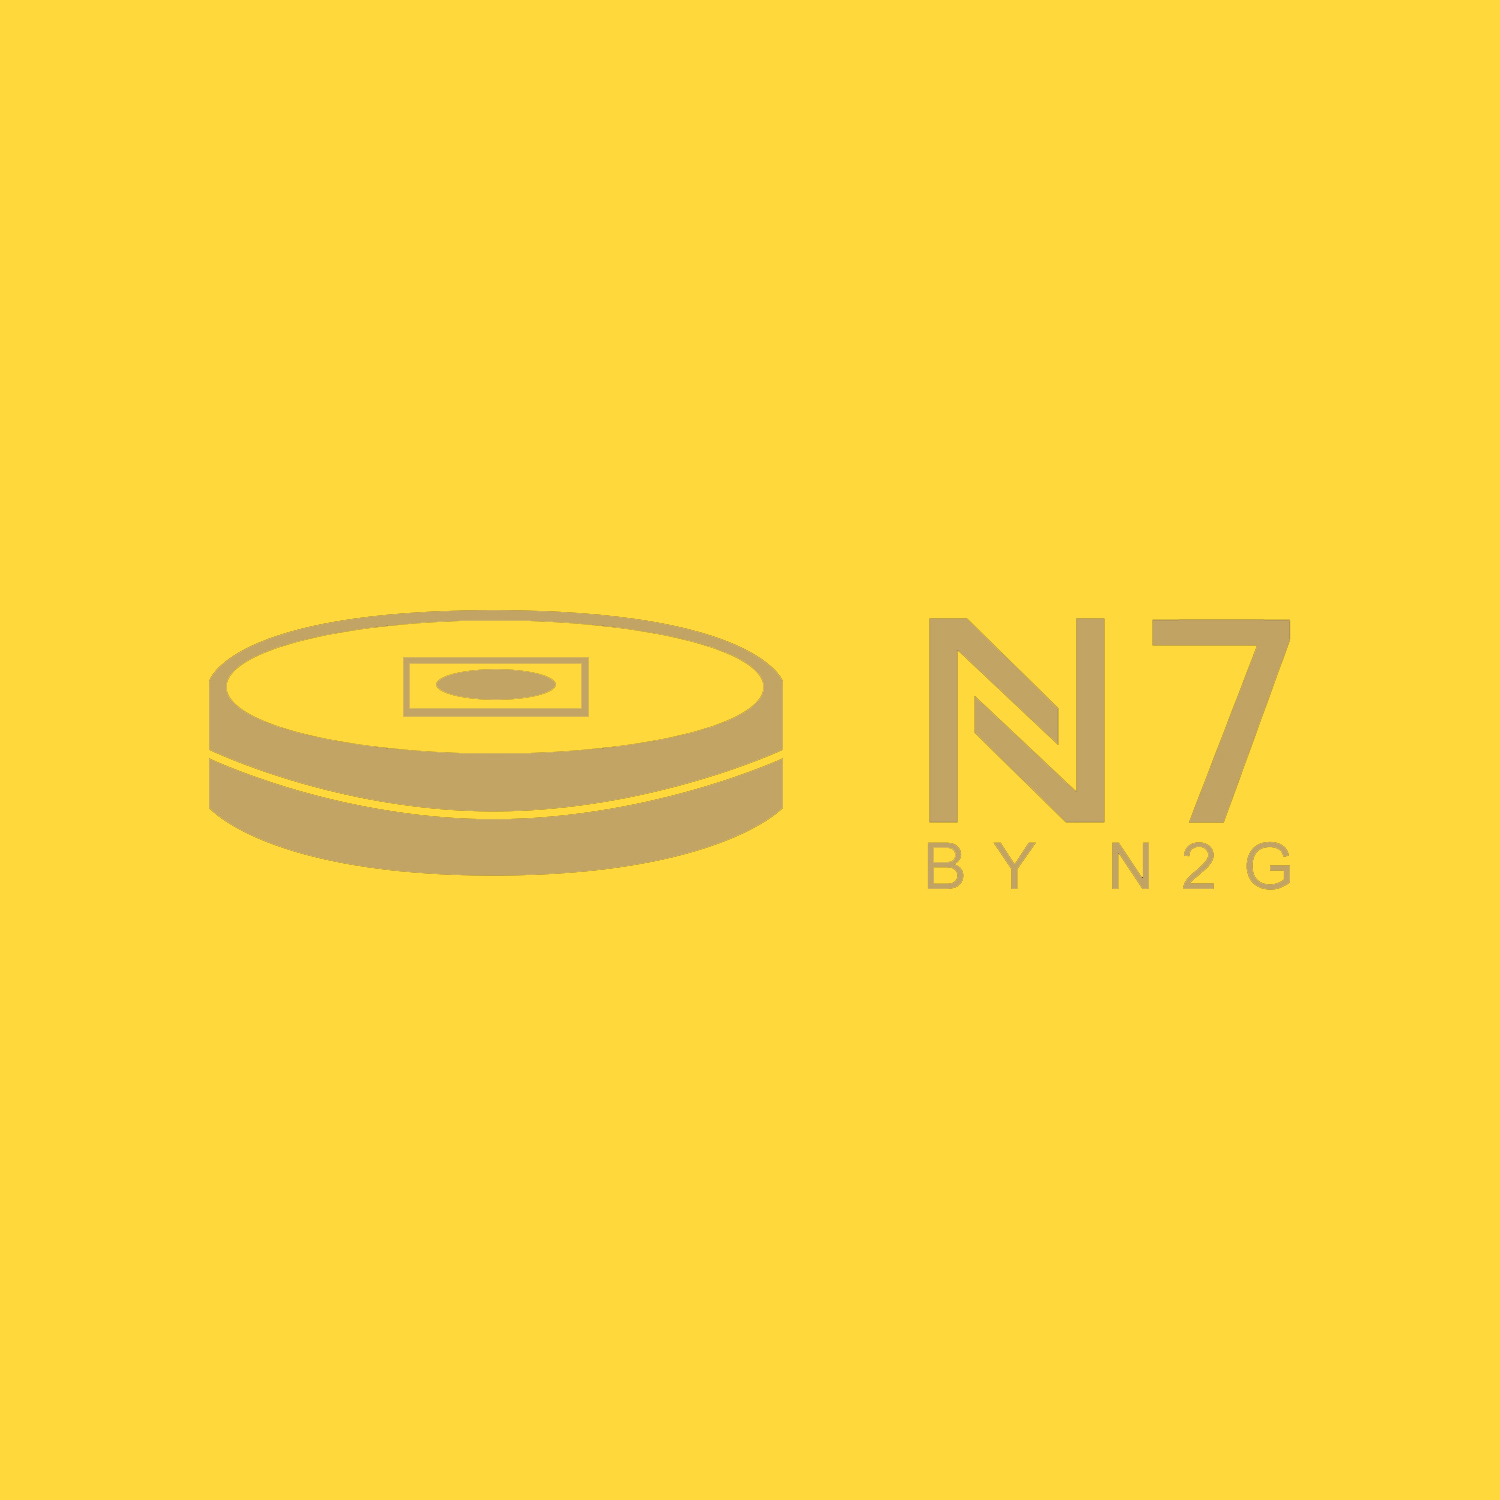 N7 by N2G-N2G Presents